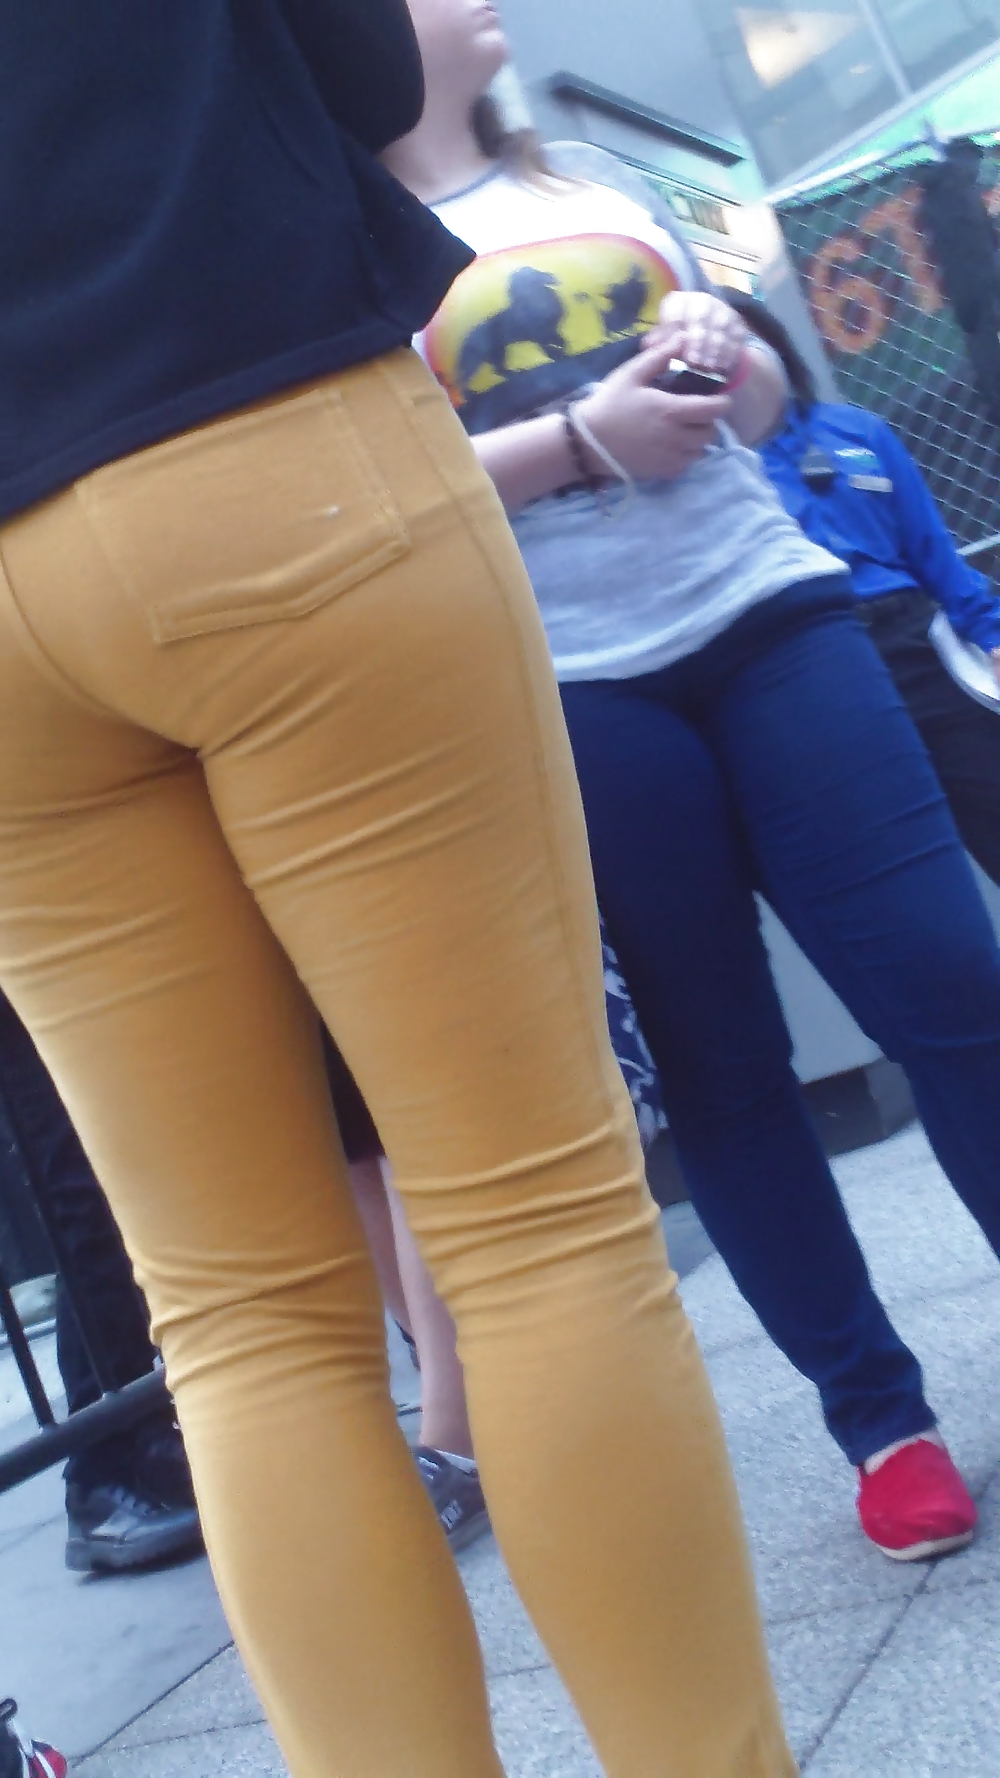 Popular teen girls butts & ass in jeans #21497847